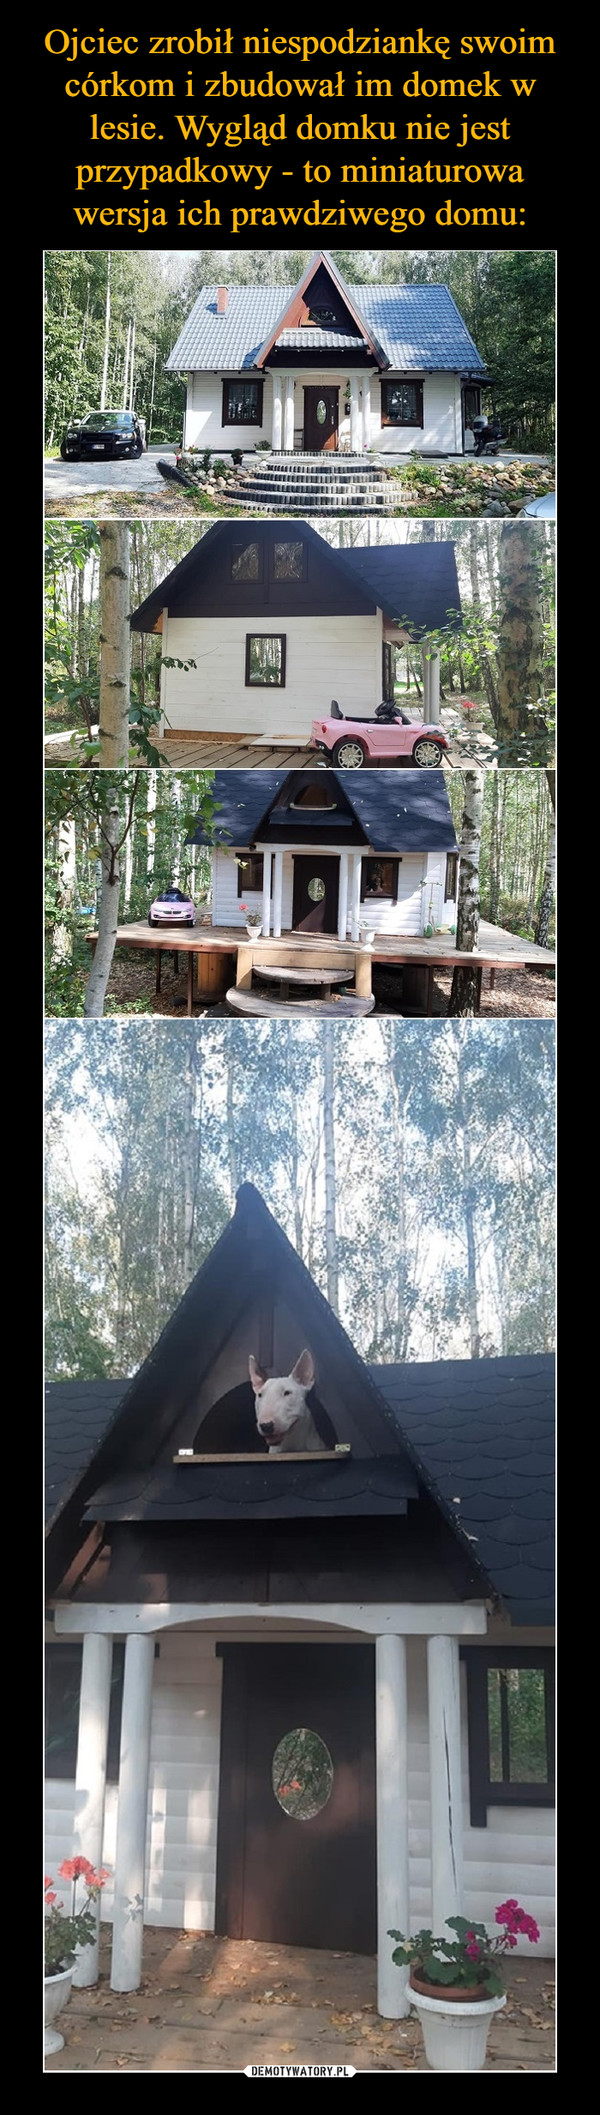 Ojciec zrobił niespodziankę swoim córkom i zbudował im domek w lesie. Wygląd domku nie jest przypadkowy - to miniaturowa wersja ich prawdziwego domu: